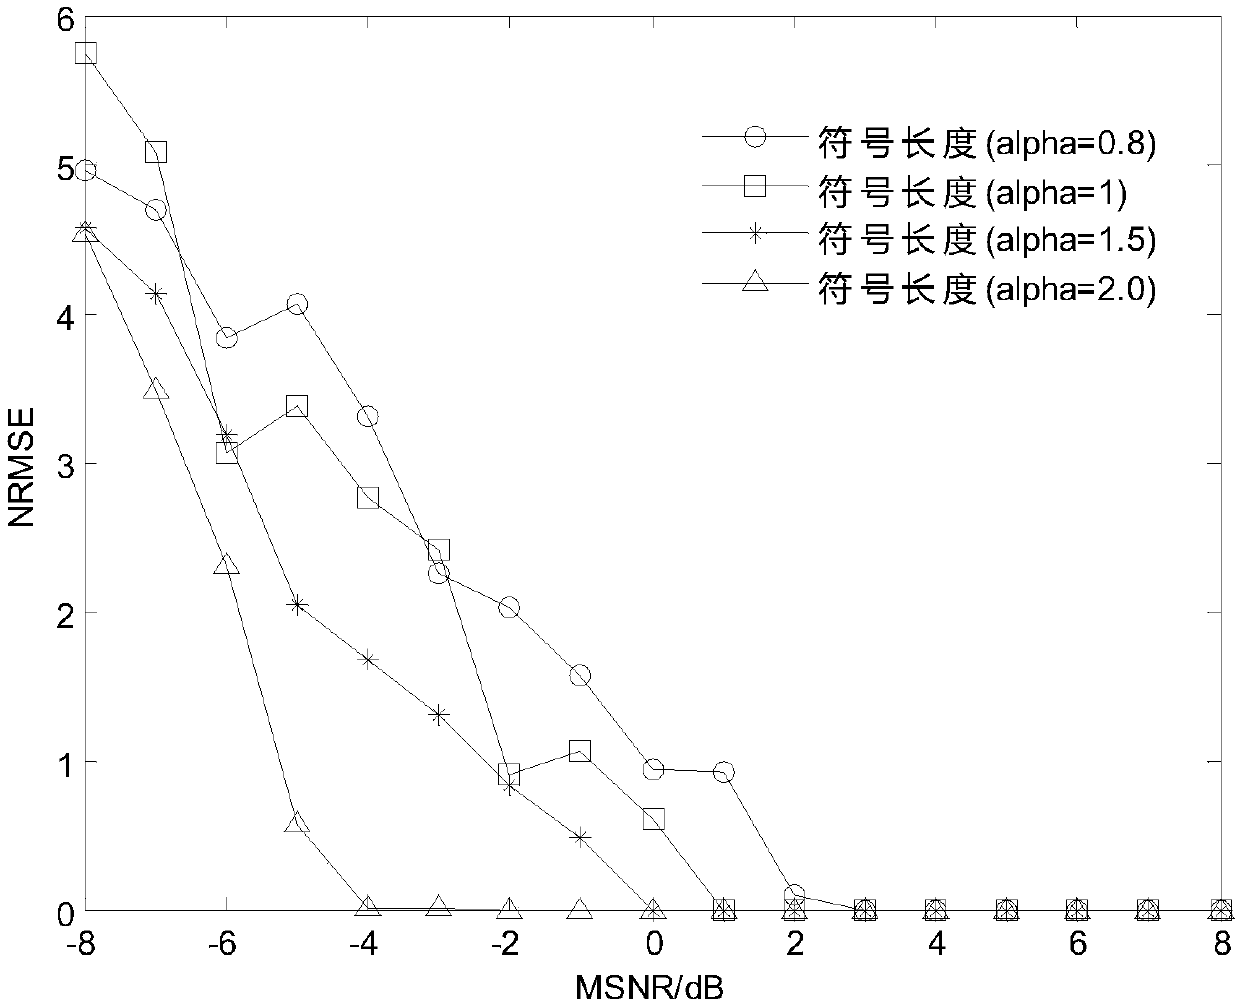 Modulation parameter estimation method for OFDM signals under Alpha stable distribution noises